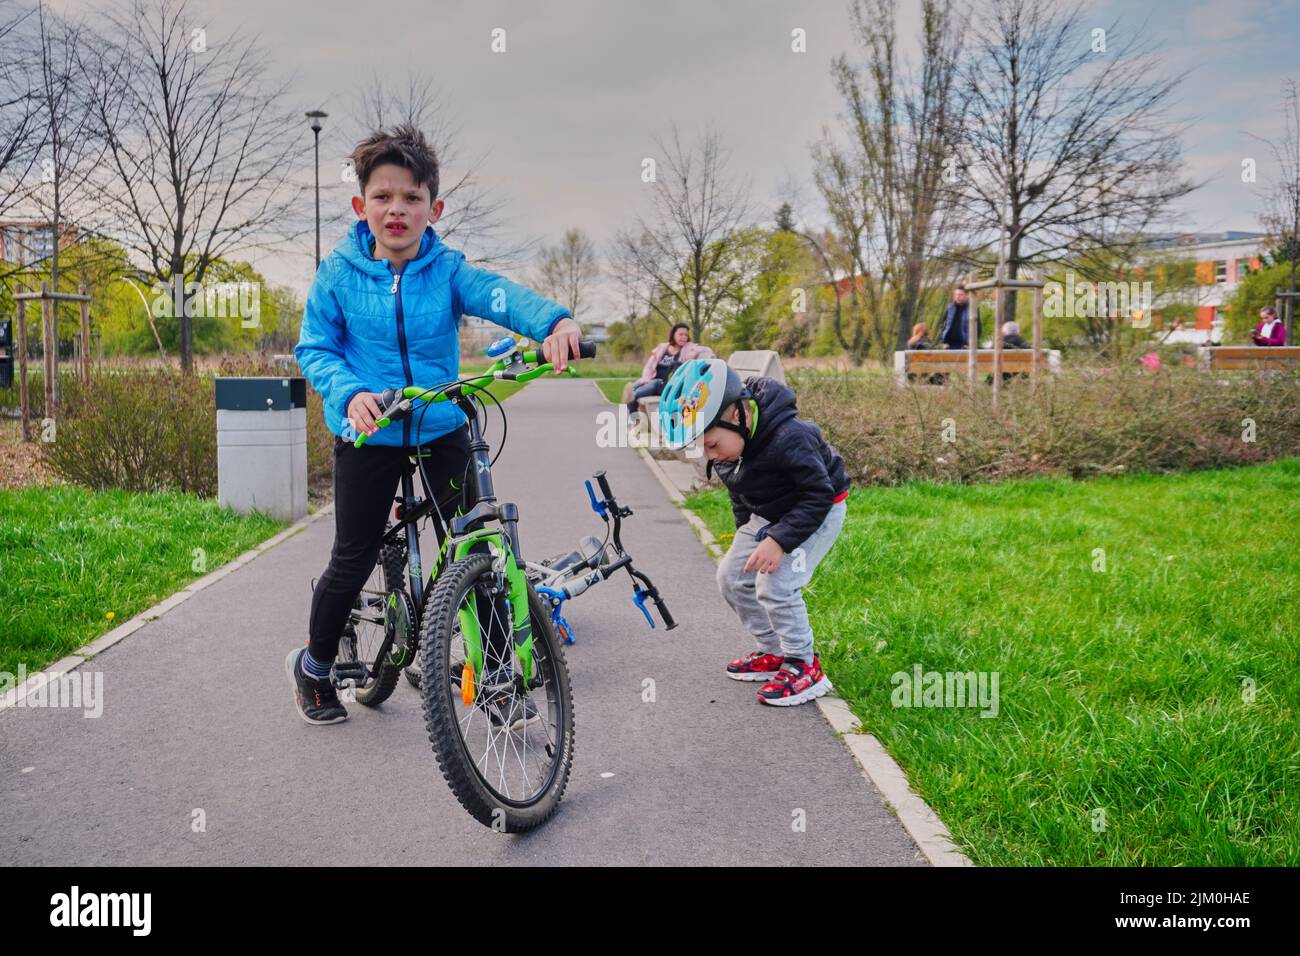 Ein kleiner Junge auf einem Fahrrad und ein anderer auf einem Asphaltweg auf der Suche nach etwas in einem Park im Bezirk Orla Bialego Stockfoto